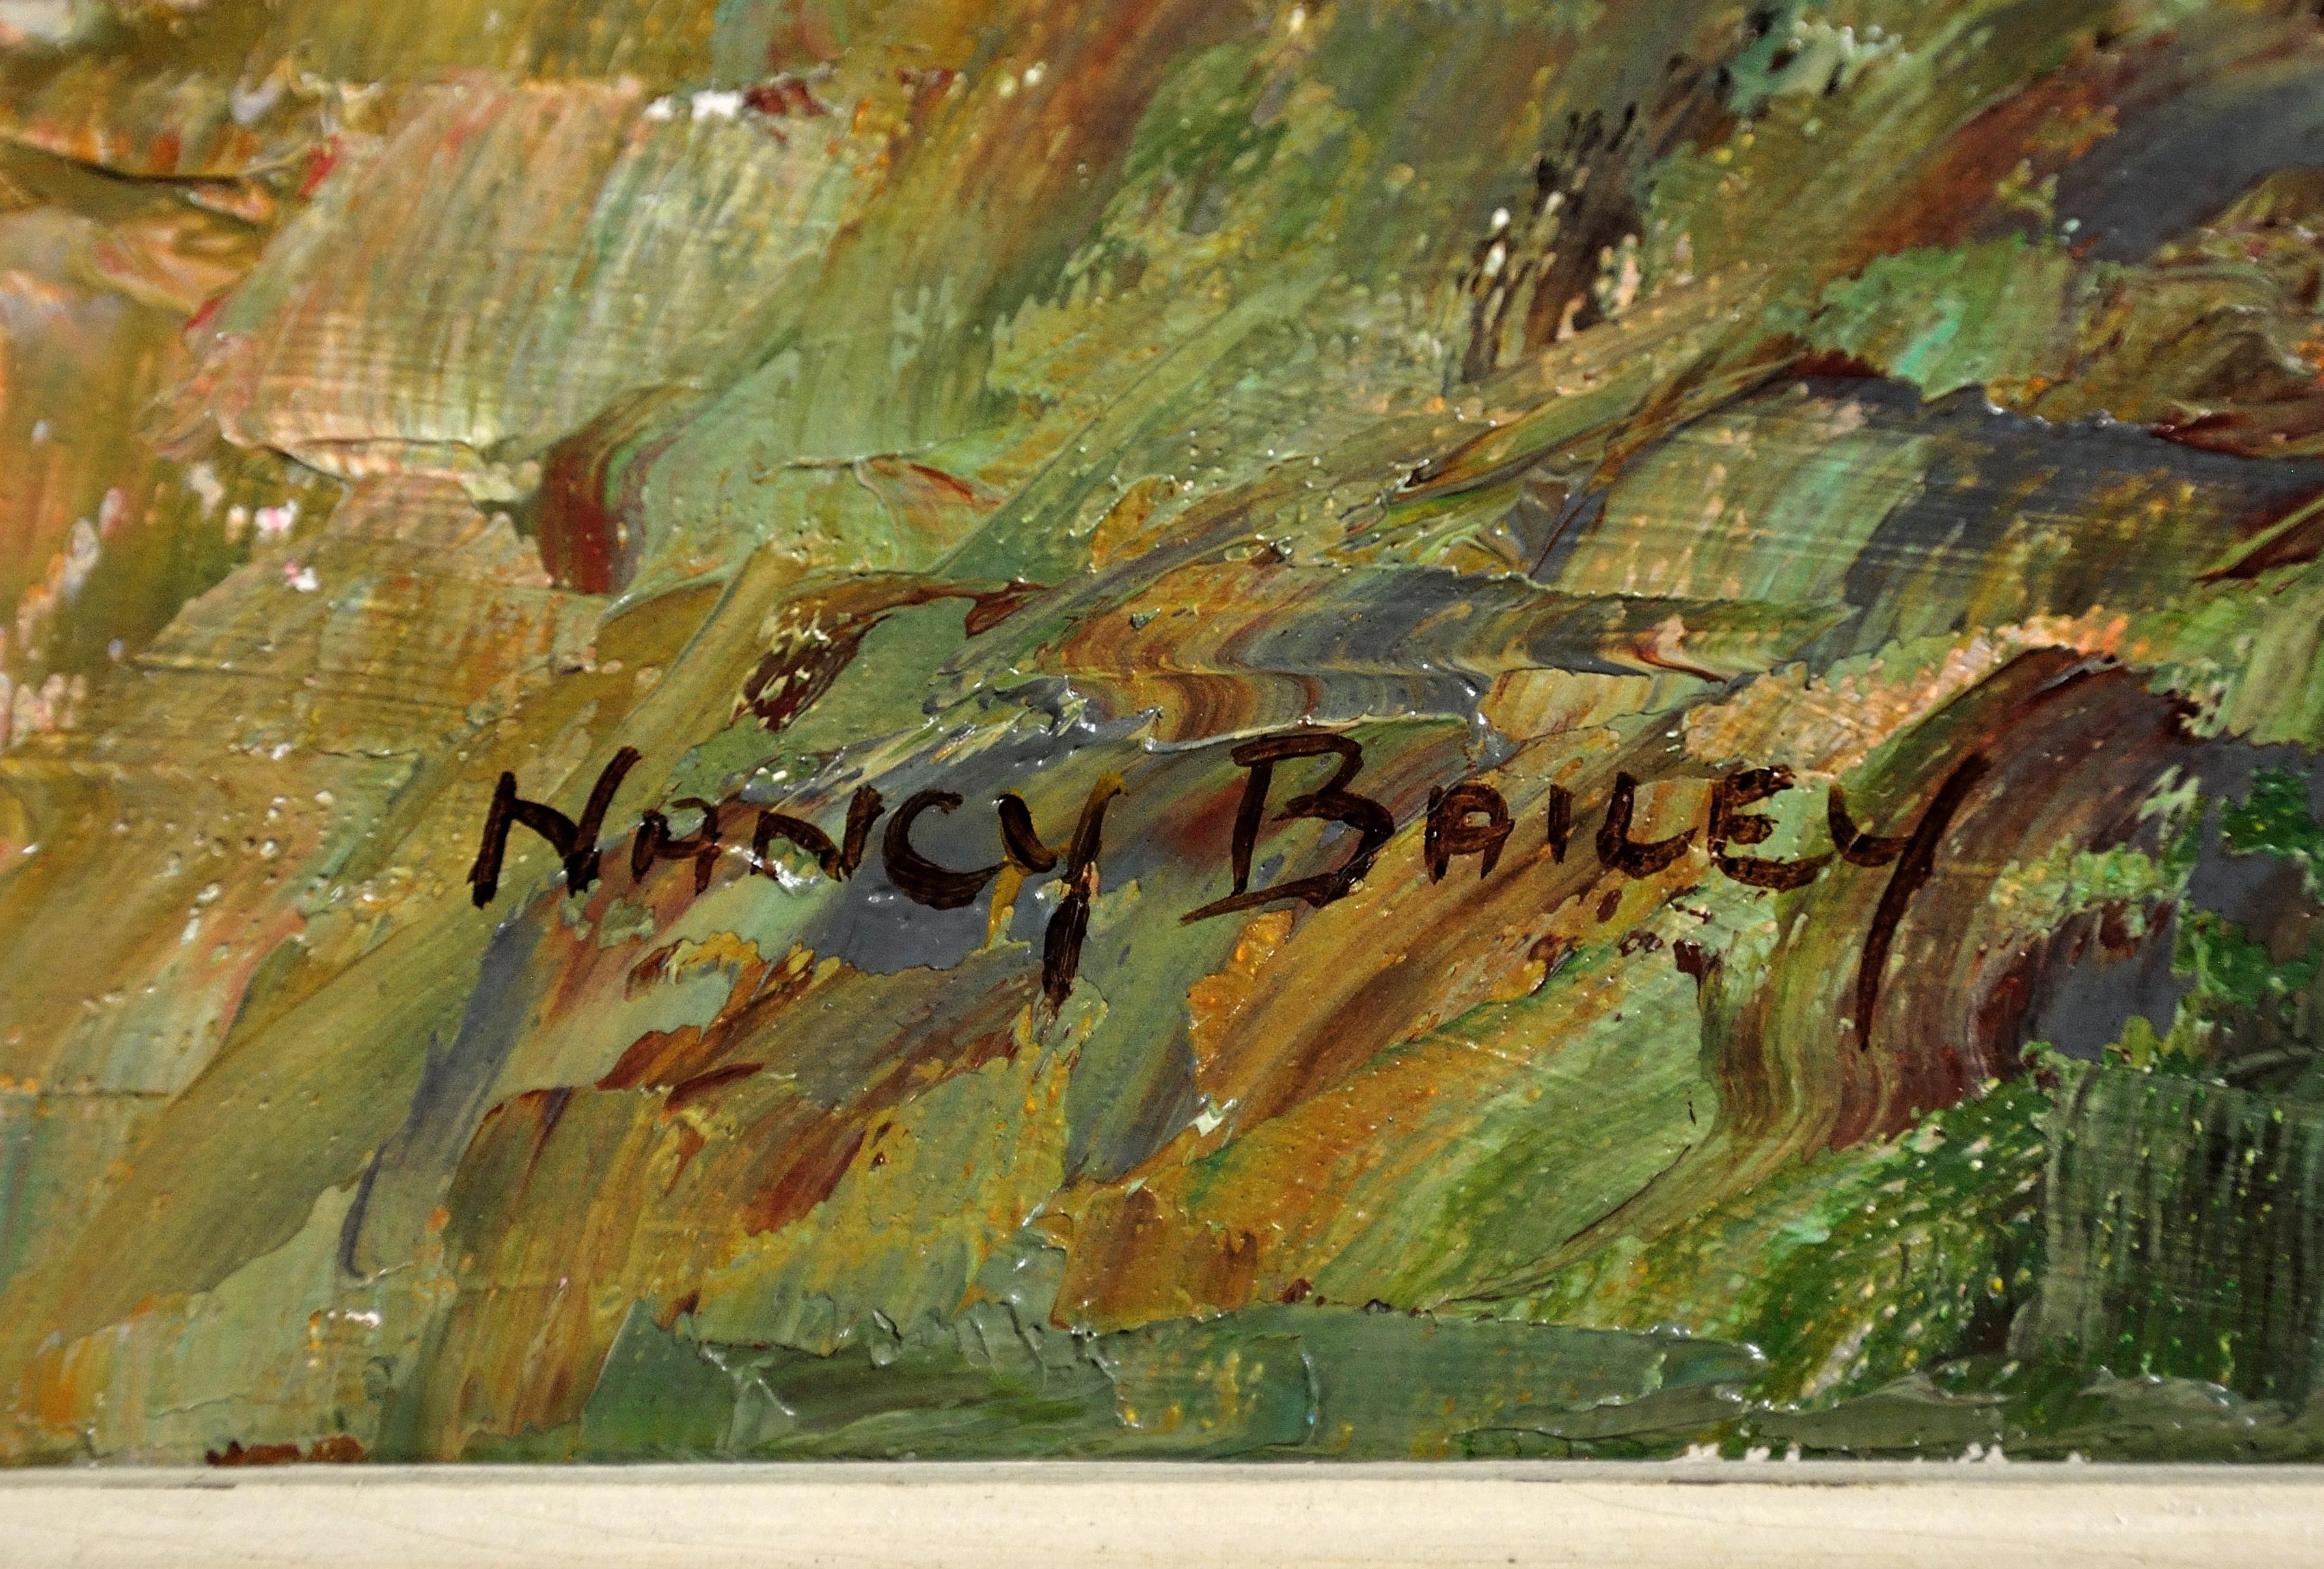 nancy bailey artist